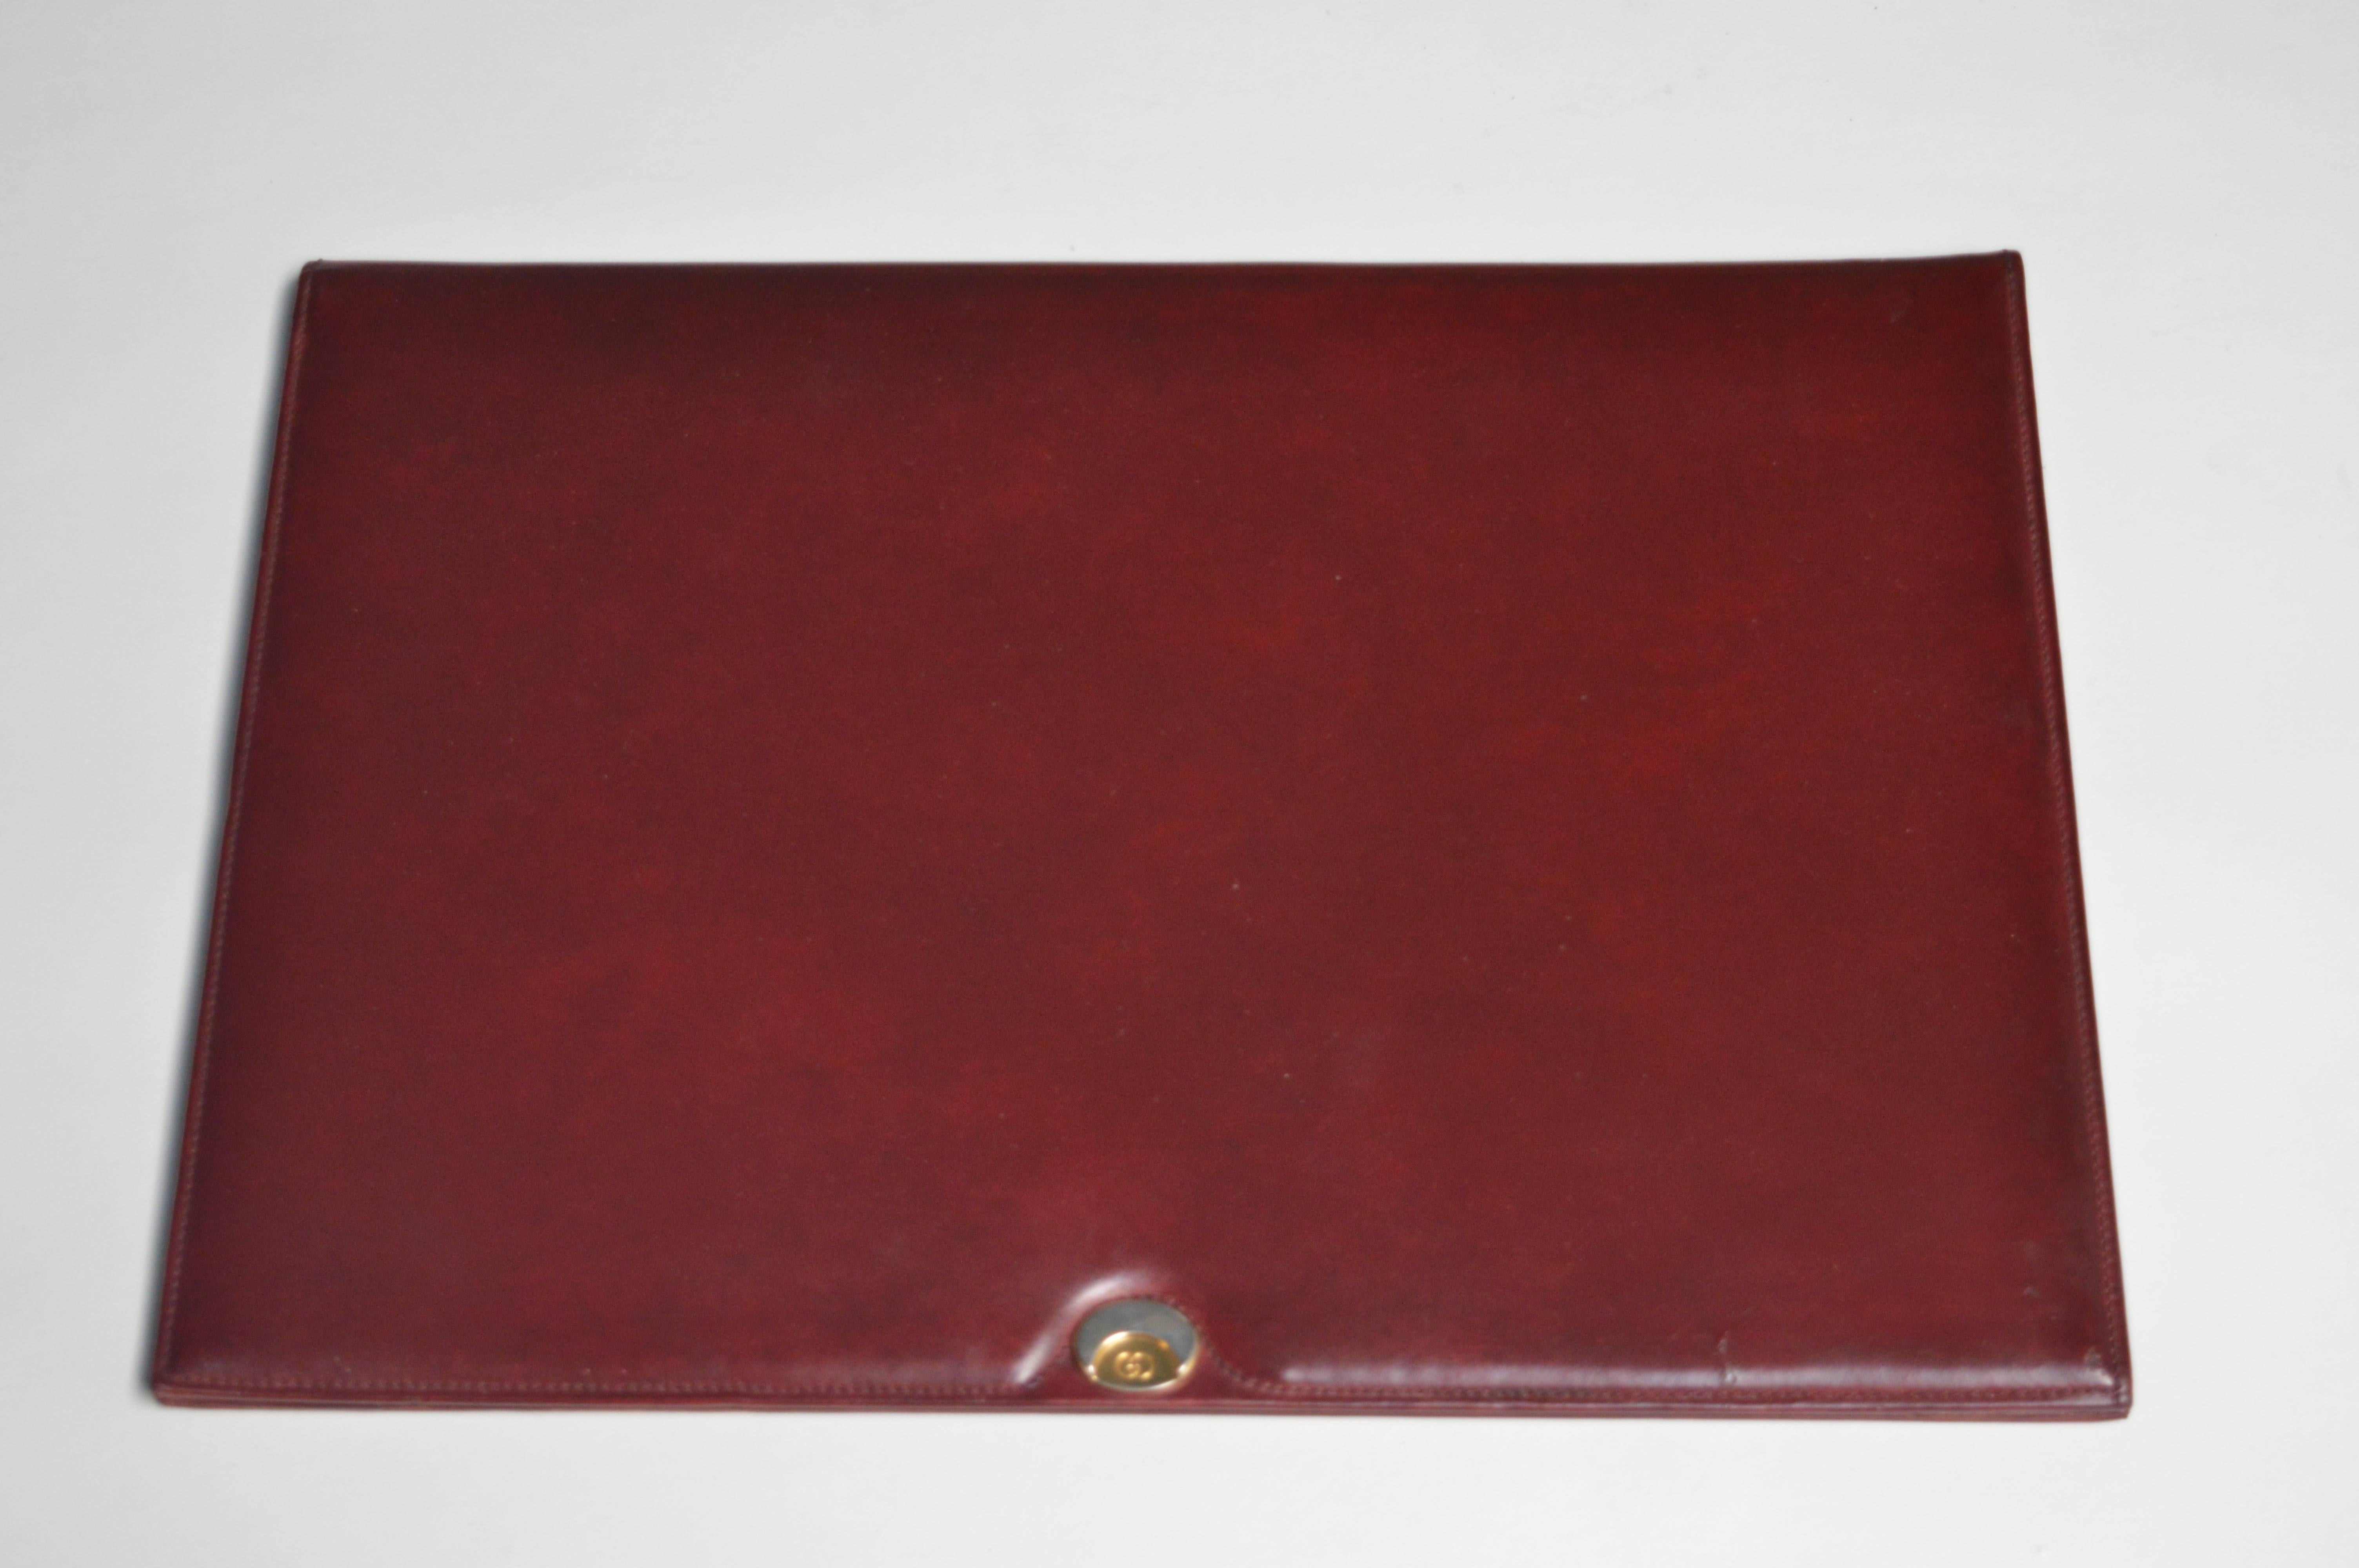 Hübscher Gucci Tischkalender und Schreibblock aus rotem Leder. Originalpapier innen. Gucci-Plakette aus Messing und Chrom auf der Vorderseite und eingeprägtes Gucci-Logo darunter. Ausgezeichneter Vintage-Zustand